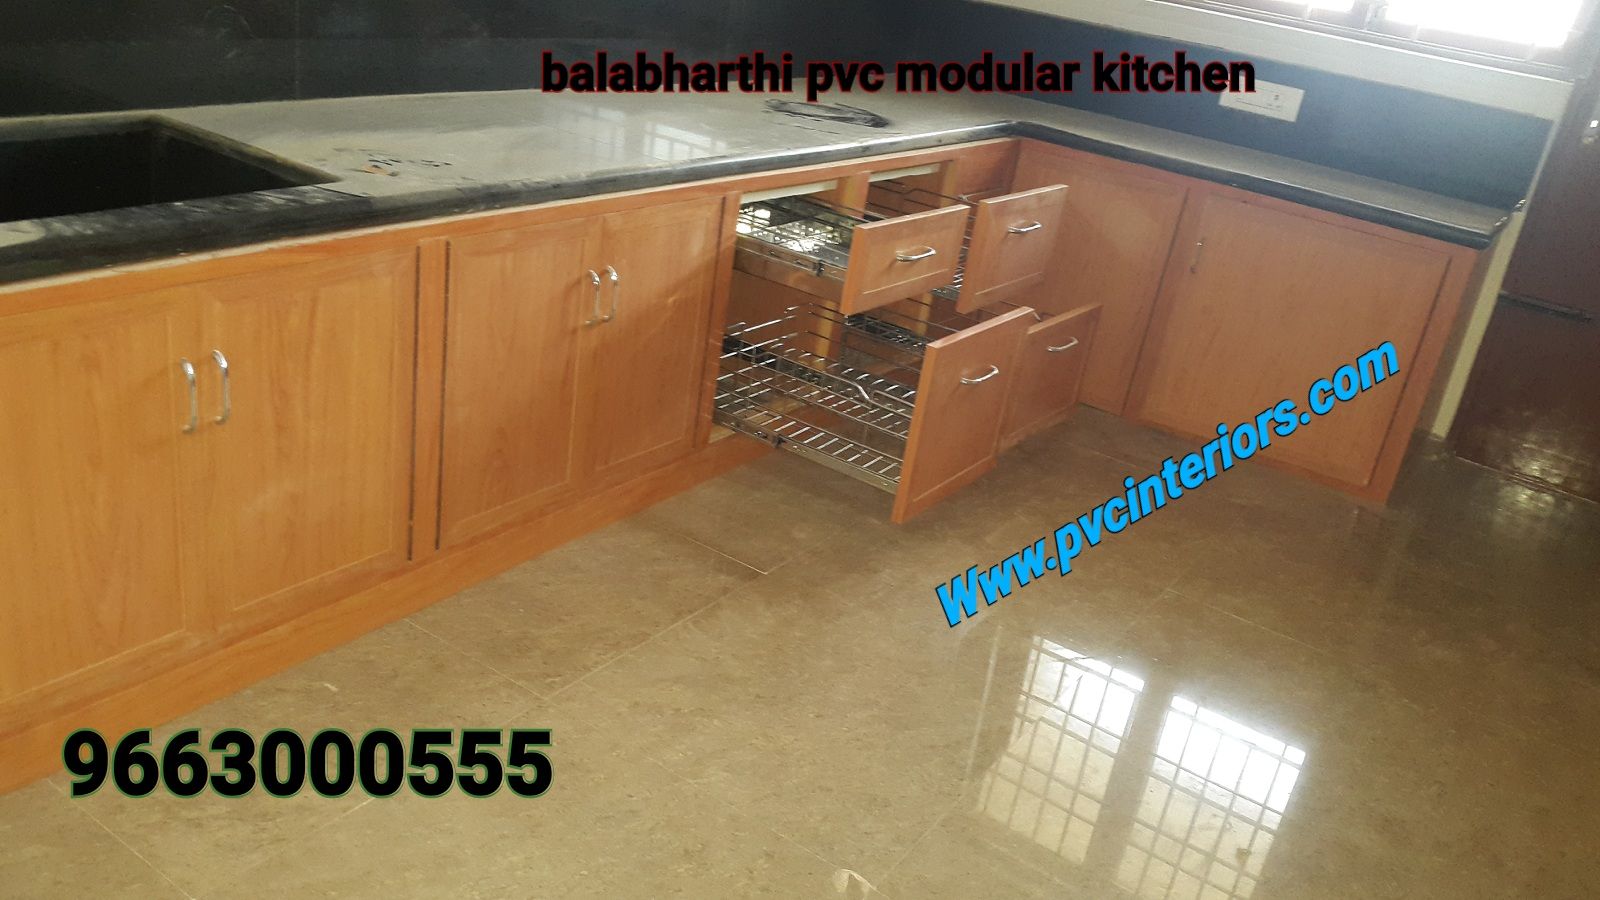 pvc modular kitchen in namakkal